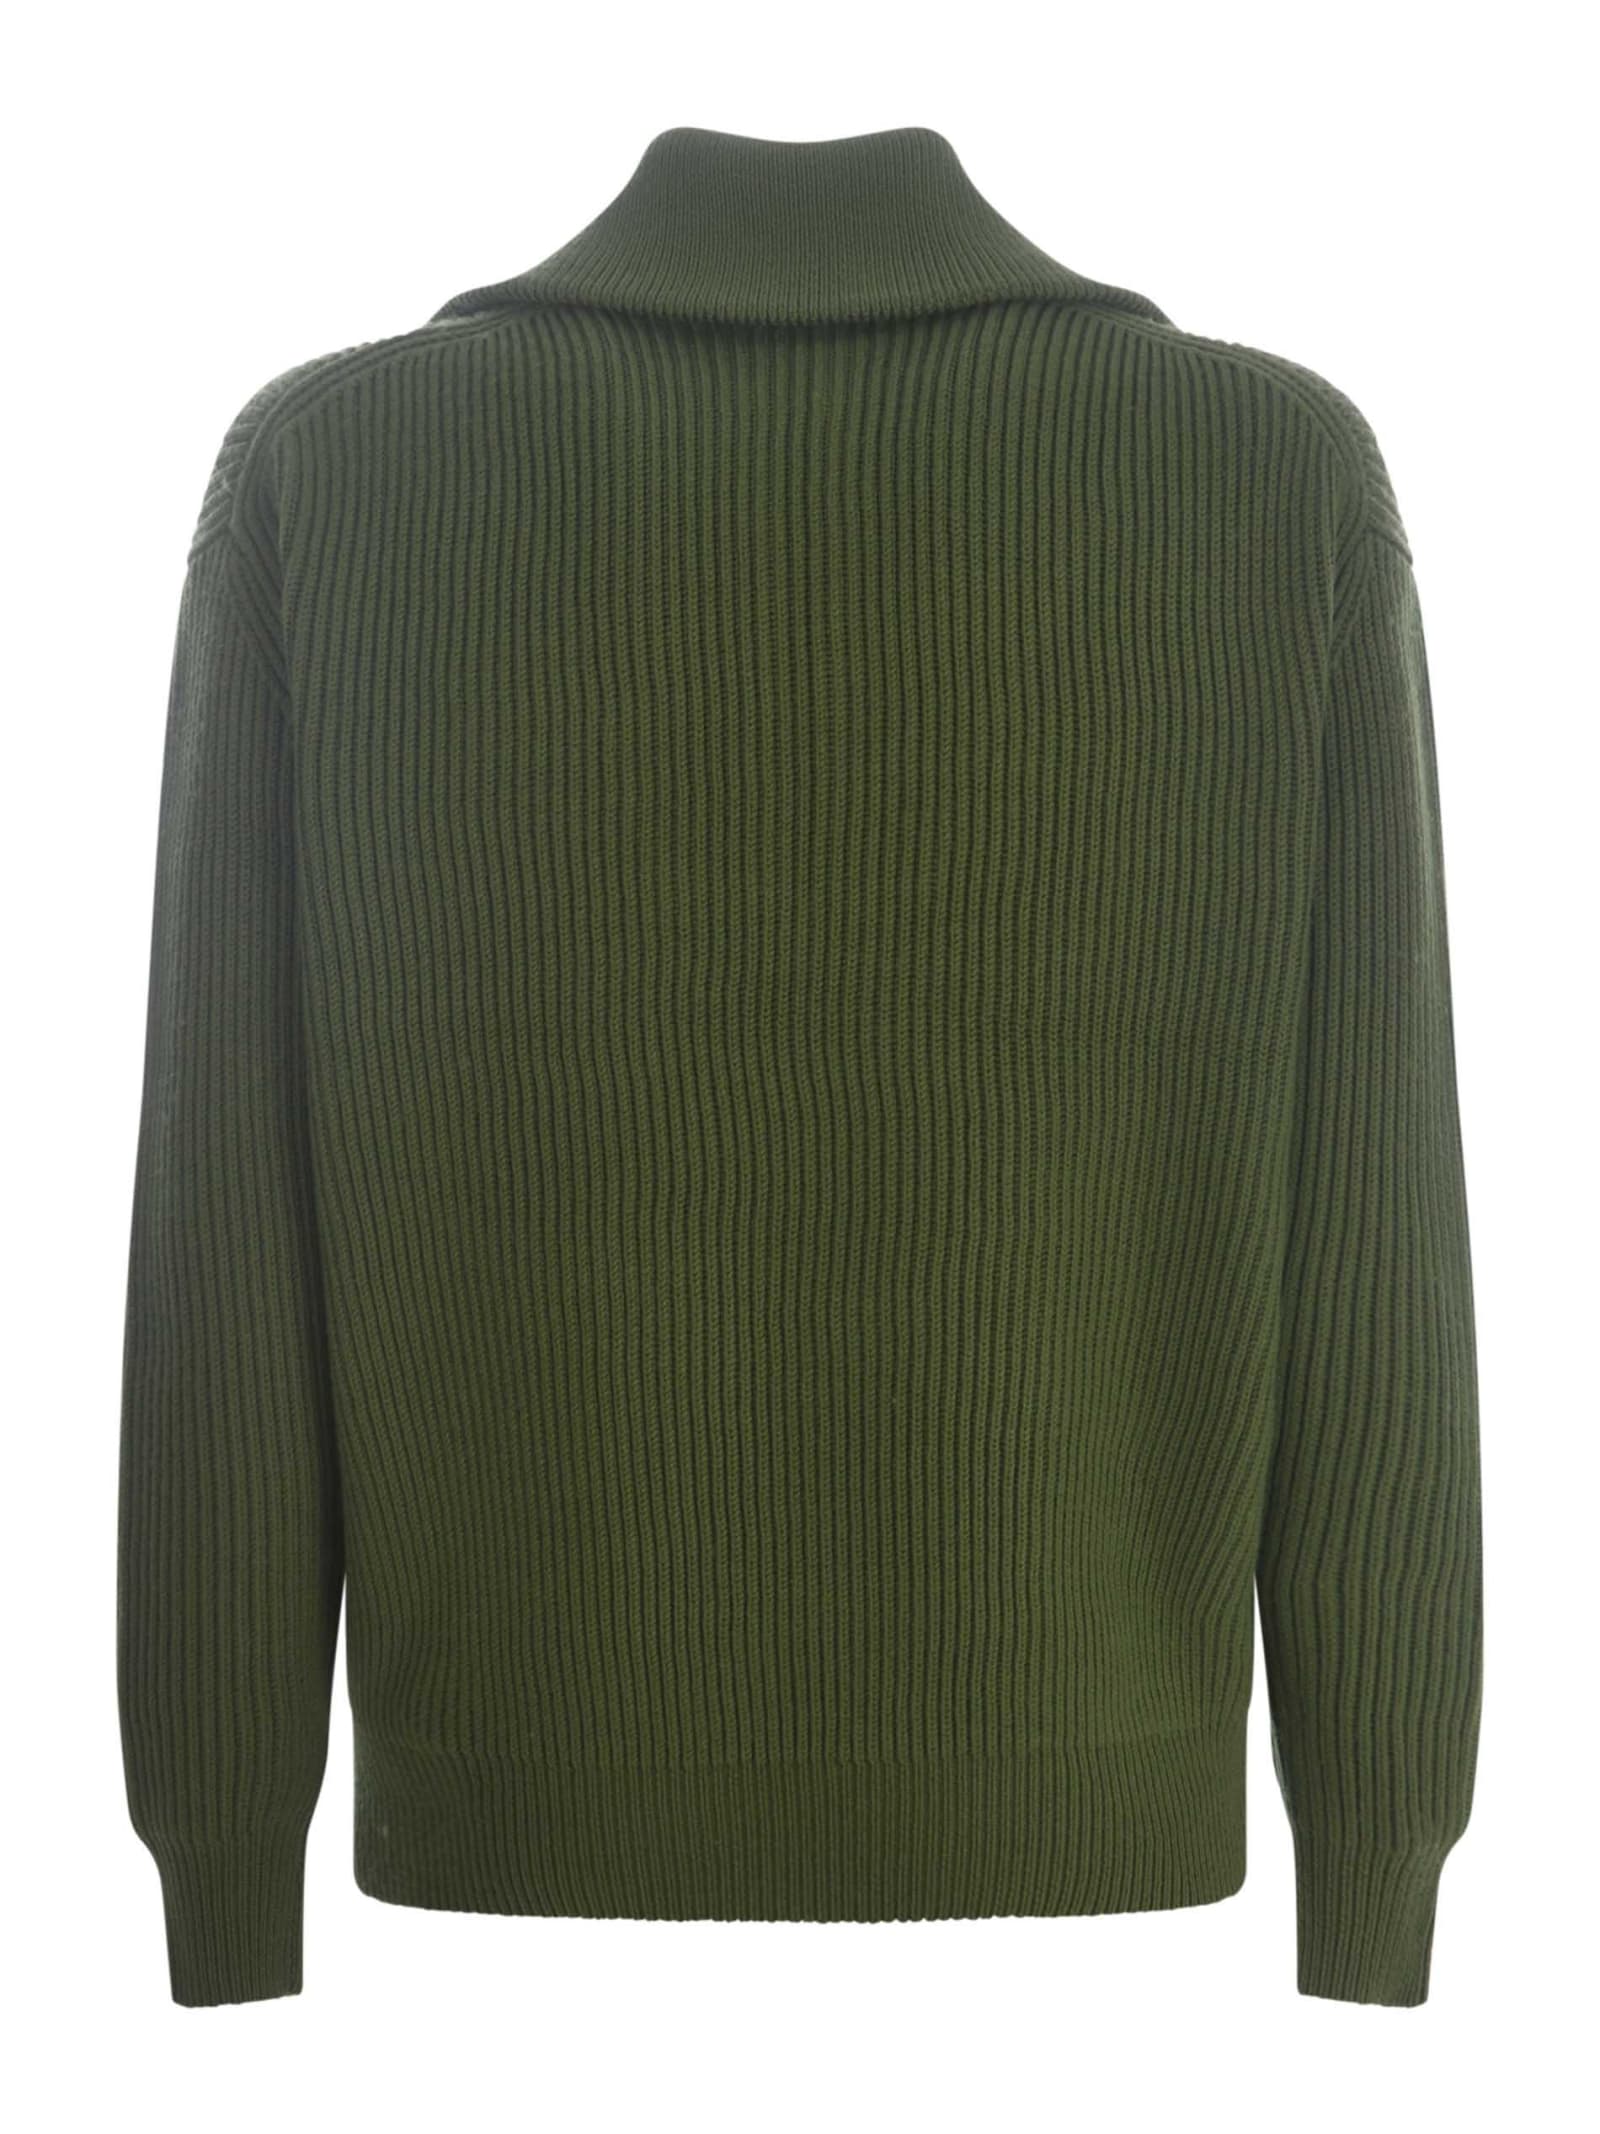 Shop Drôle De Monsieur Sweater Drole De Monsieur La Maille Zippé In Merino Wool In Verde